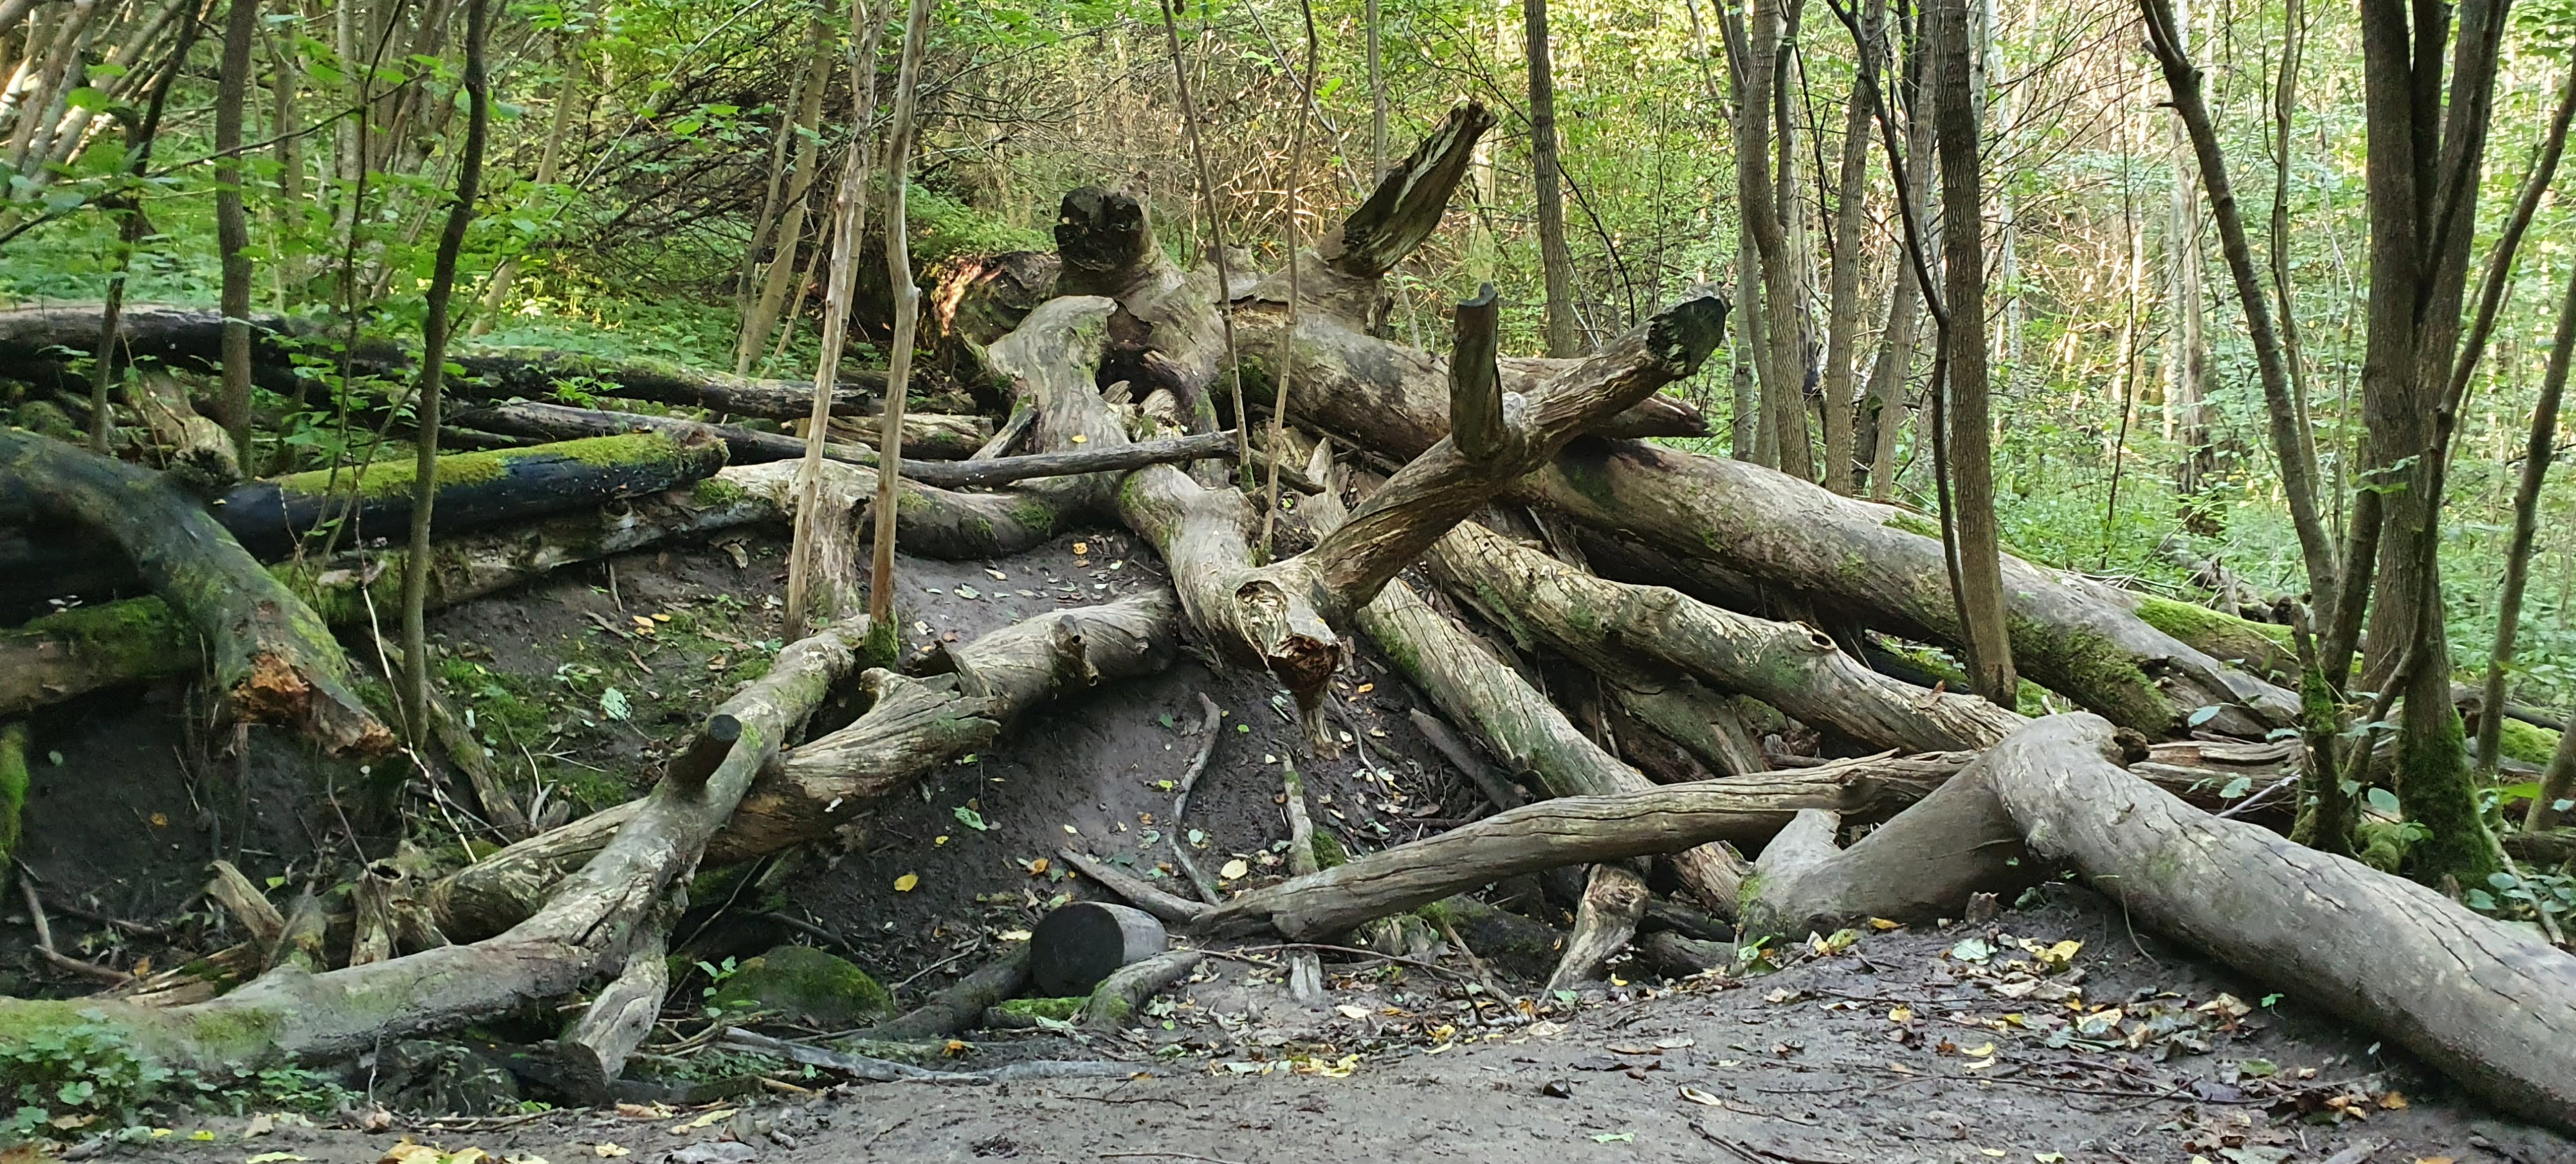 An old, fallen oak